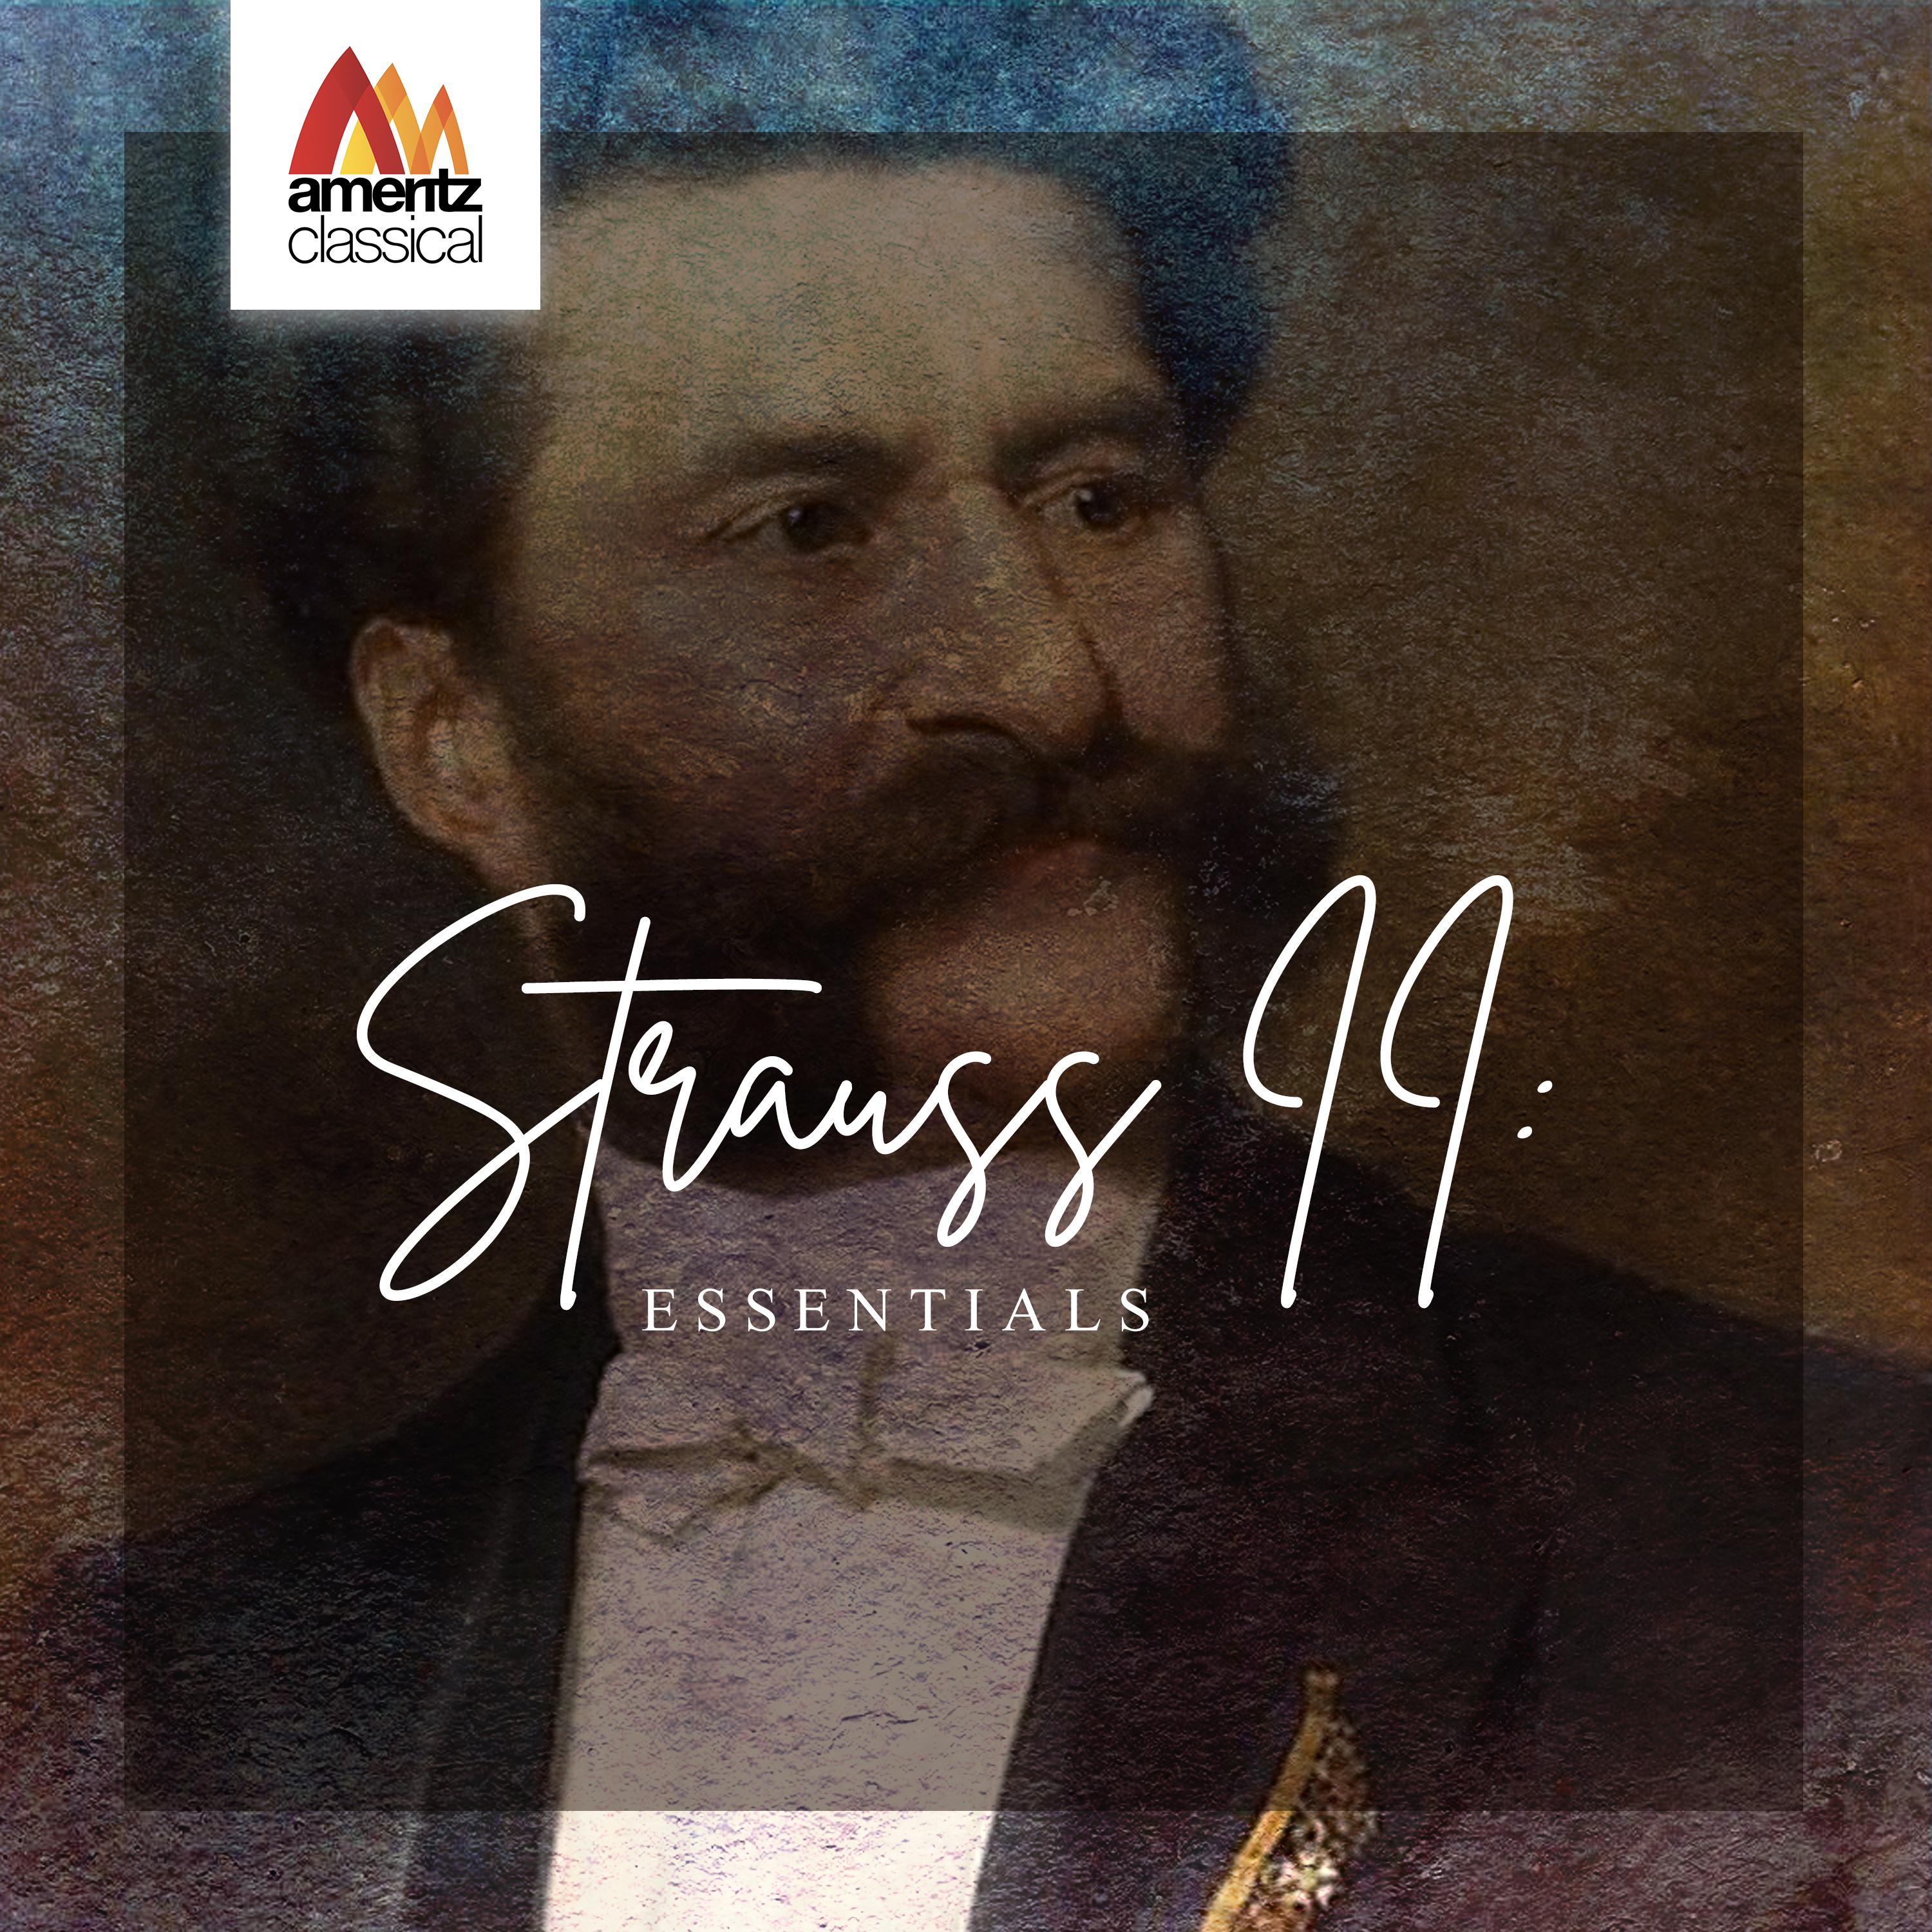 Strauss II: Essentials